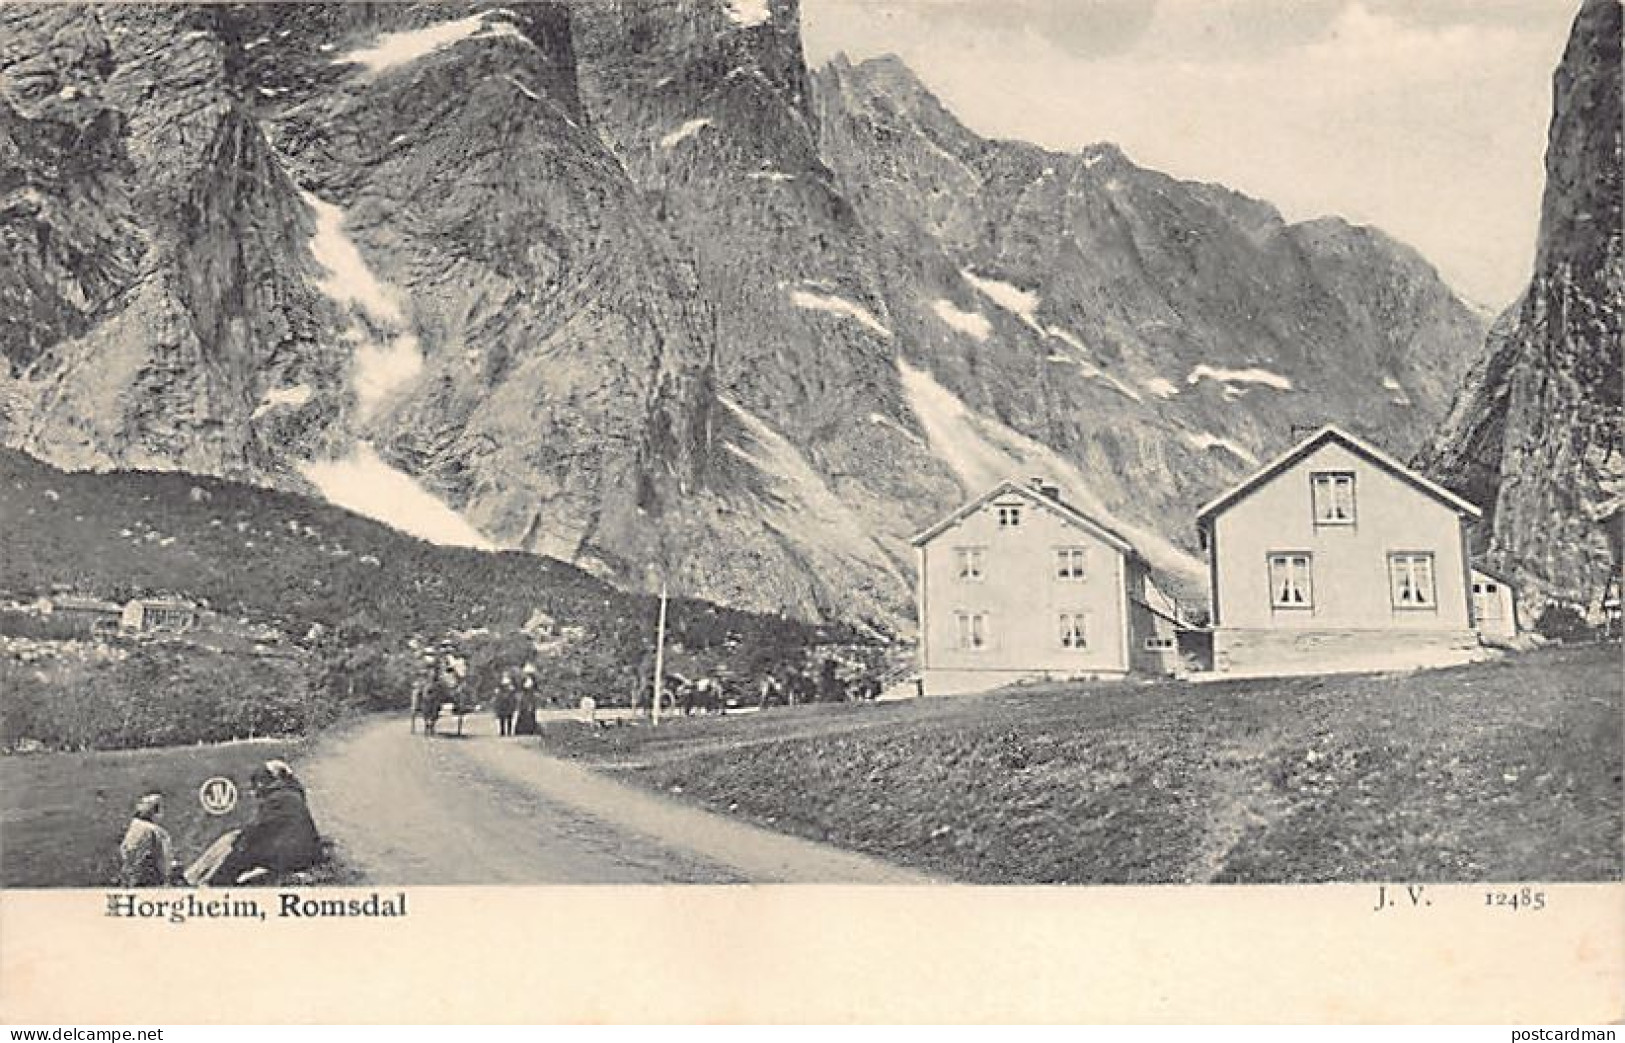 Norway - Horgheim, Romsdal - Publ. J. V. 12485 - Norvège